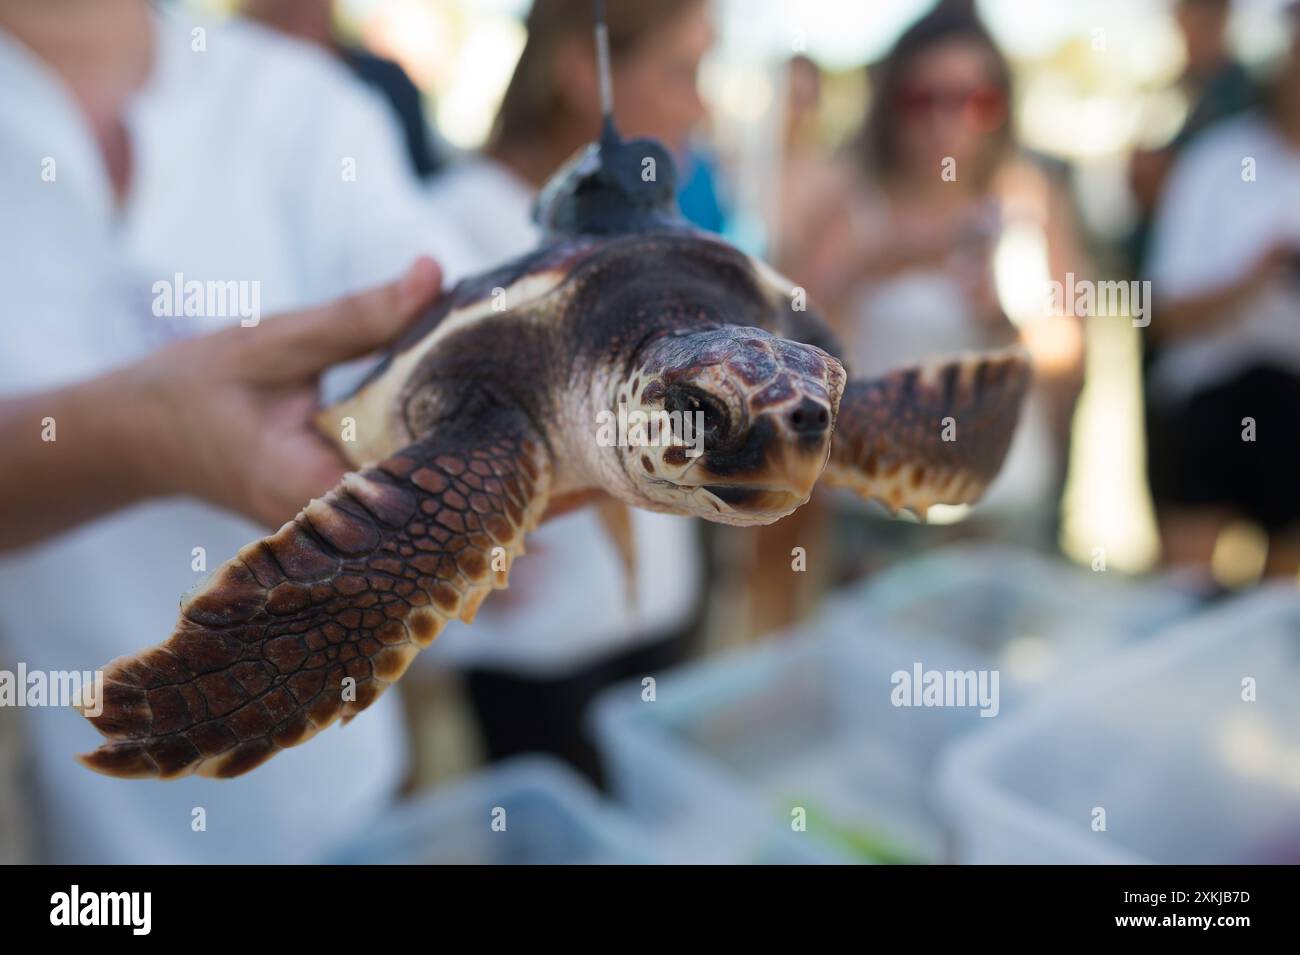 Eine Karettschildkröte (Caretta caretta) wird gesehen, bevor sie am Strand von Puerto Banus freigelassen wird. 2023 schlüpften an einem Strand in Marbella insgesamt 59 Schildkröteneier (Caretta caretta). Das ganze Jahr über kümmerten sich die Mitglieder der Managementzentren der andalusischen Meeresgebiete um die Schildkröteneier, um deren Erhaltung und Wachstum zu erleichtern und sie für die Freisetzung ins Meer vorzubereiten. Einige der Schildkröten waren mit einem Satellitensystem ausgestattet, das eine Überwachung ihrer Reise auf See ermöglicht. Stockfoto